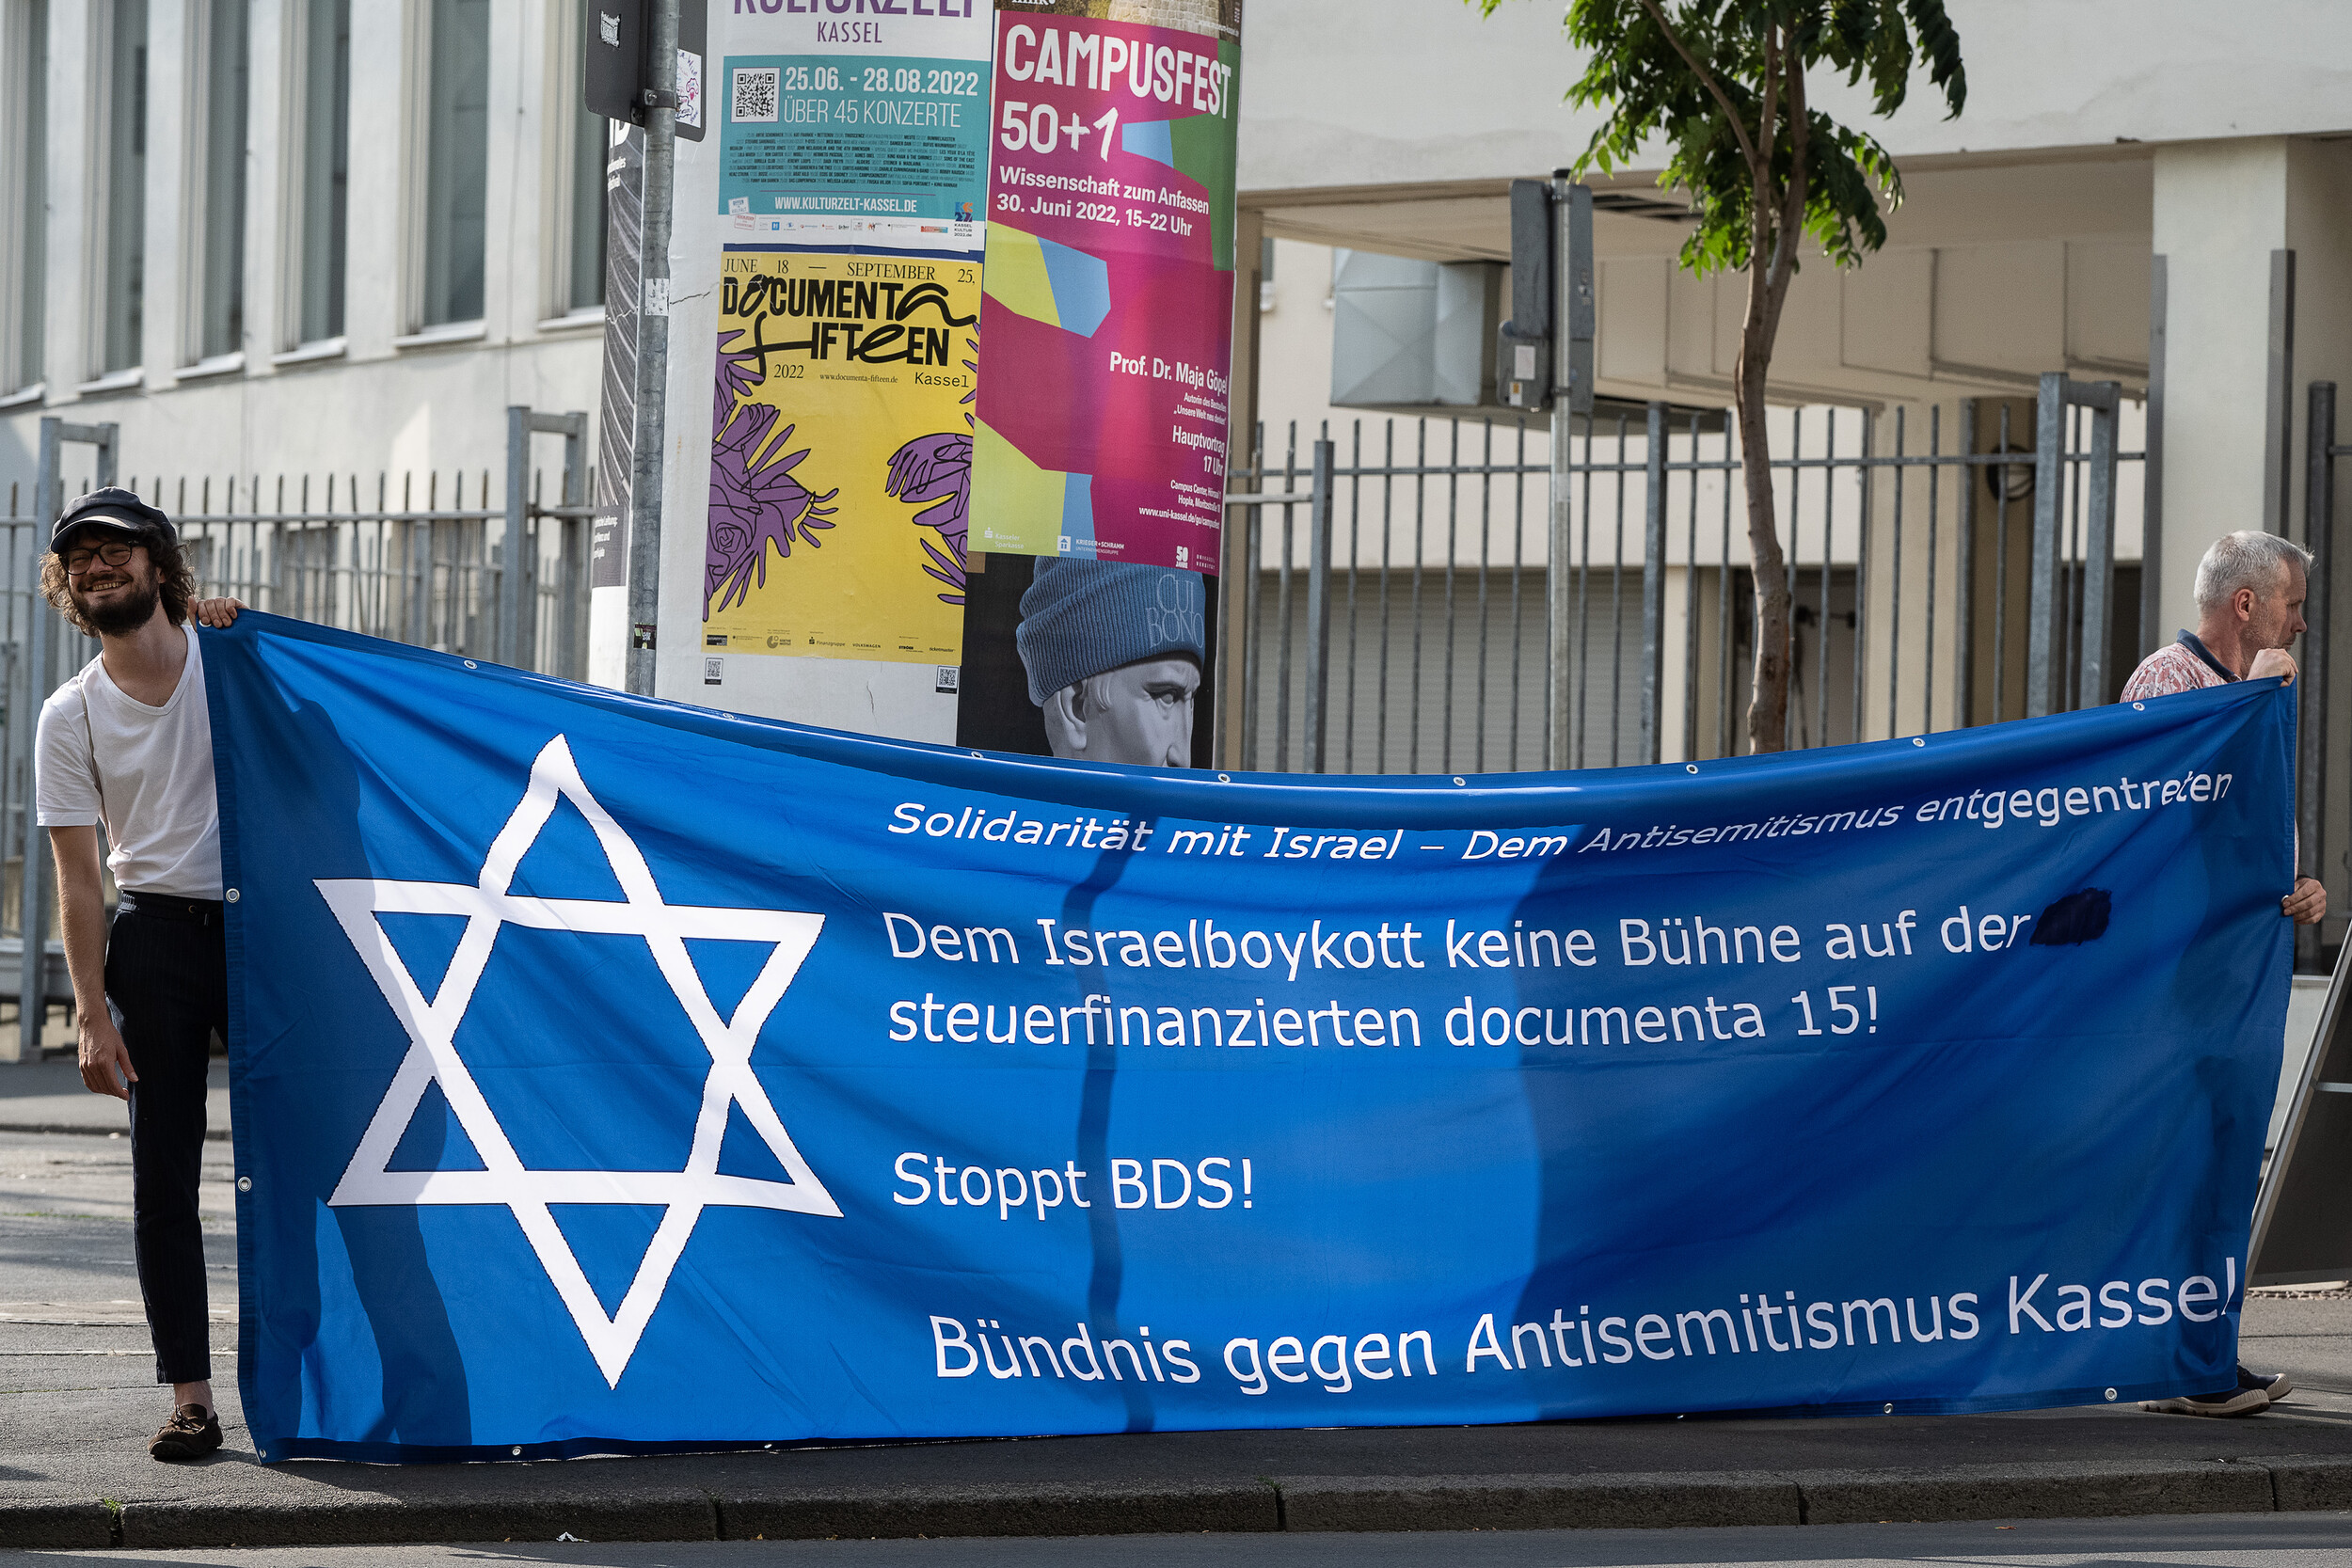 Η Documenta κινδυνεύει να κλείσει εξαιτίας της διαμάχης για τα αντισημιτικά σύμβολα